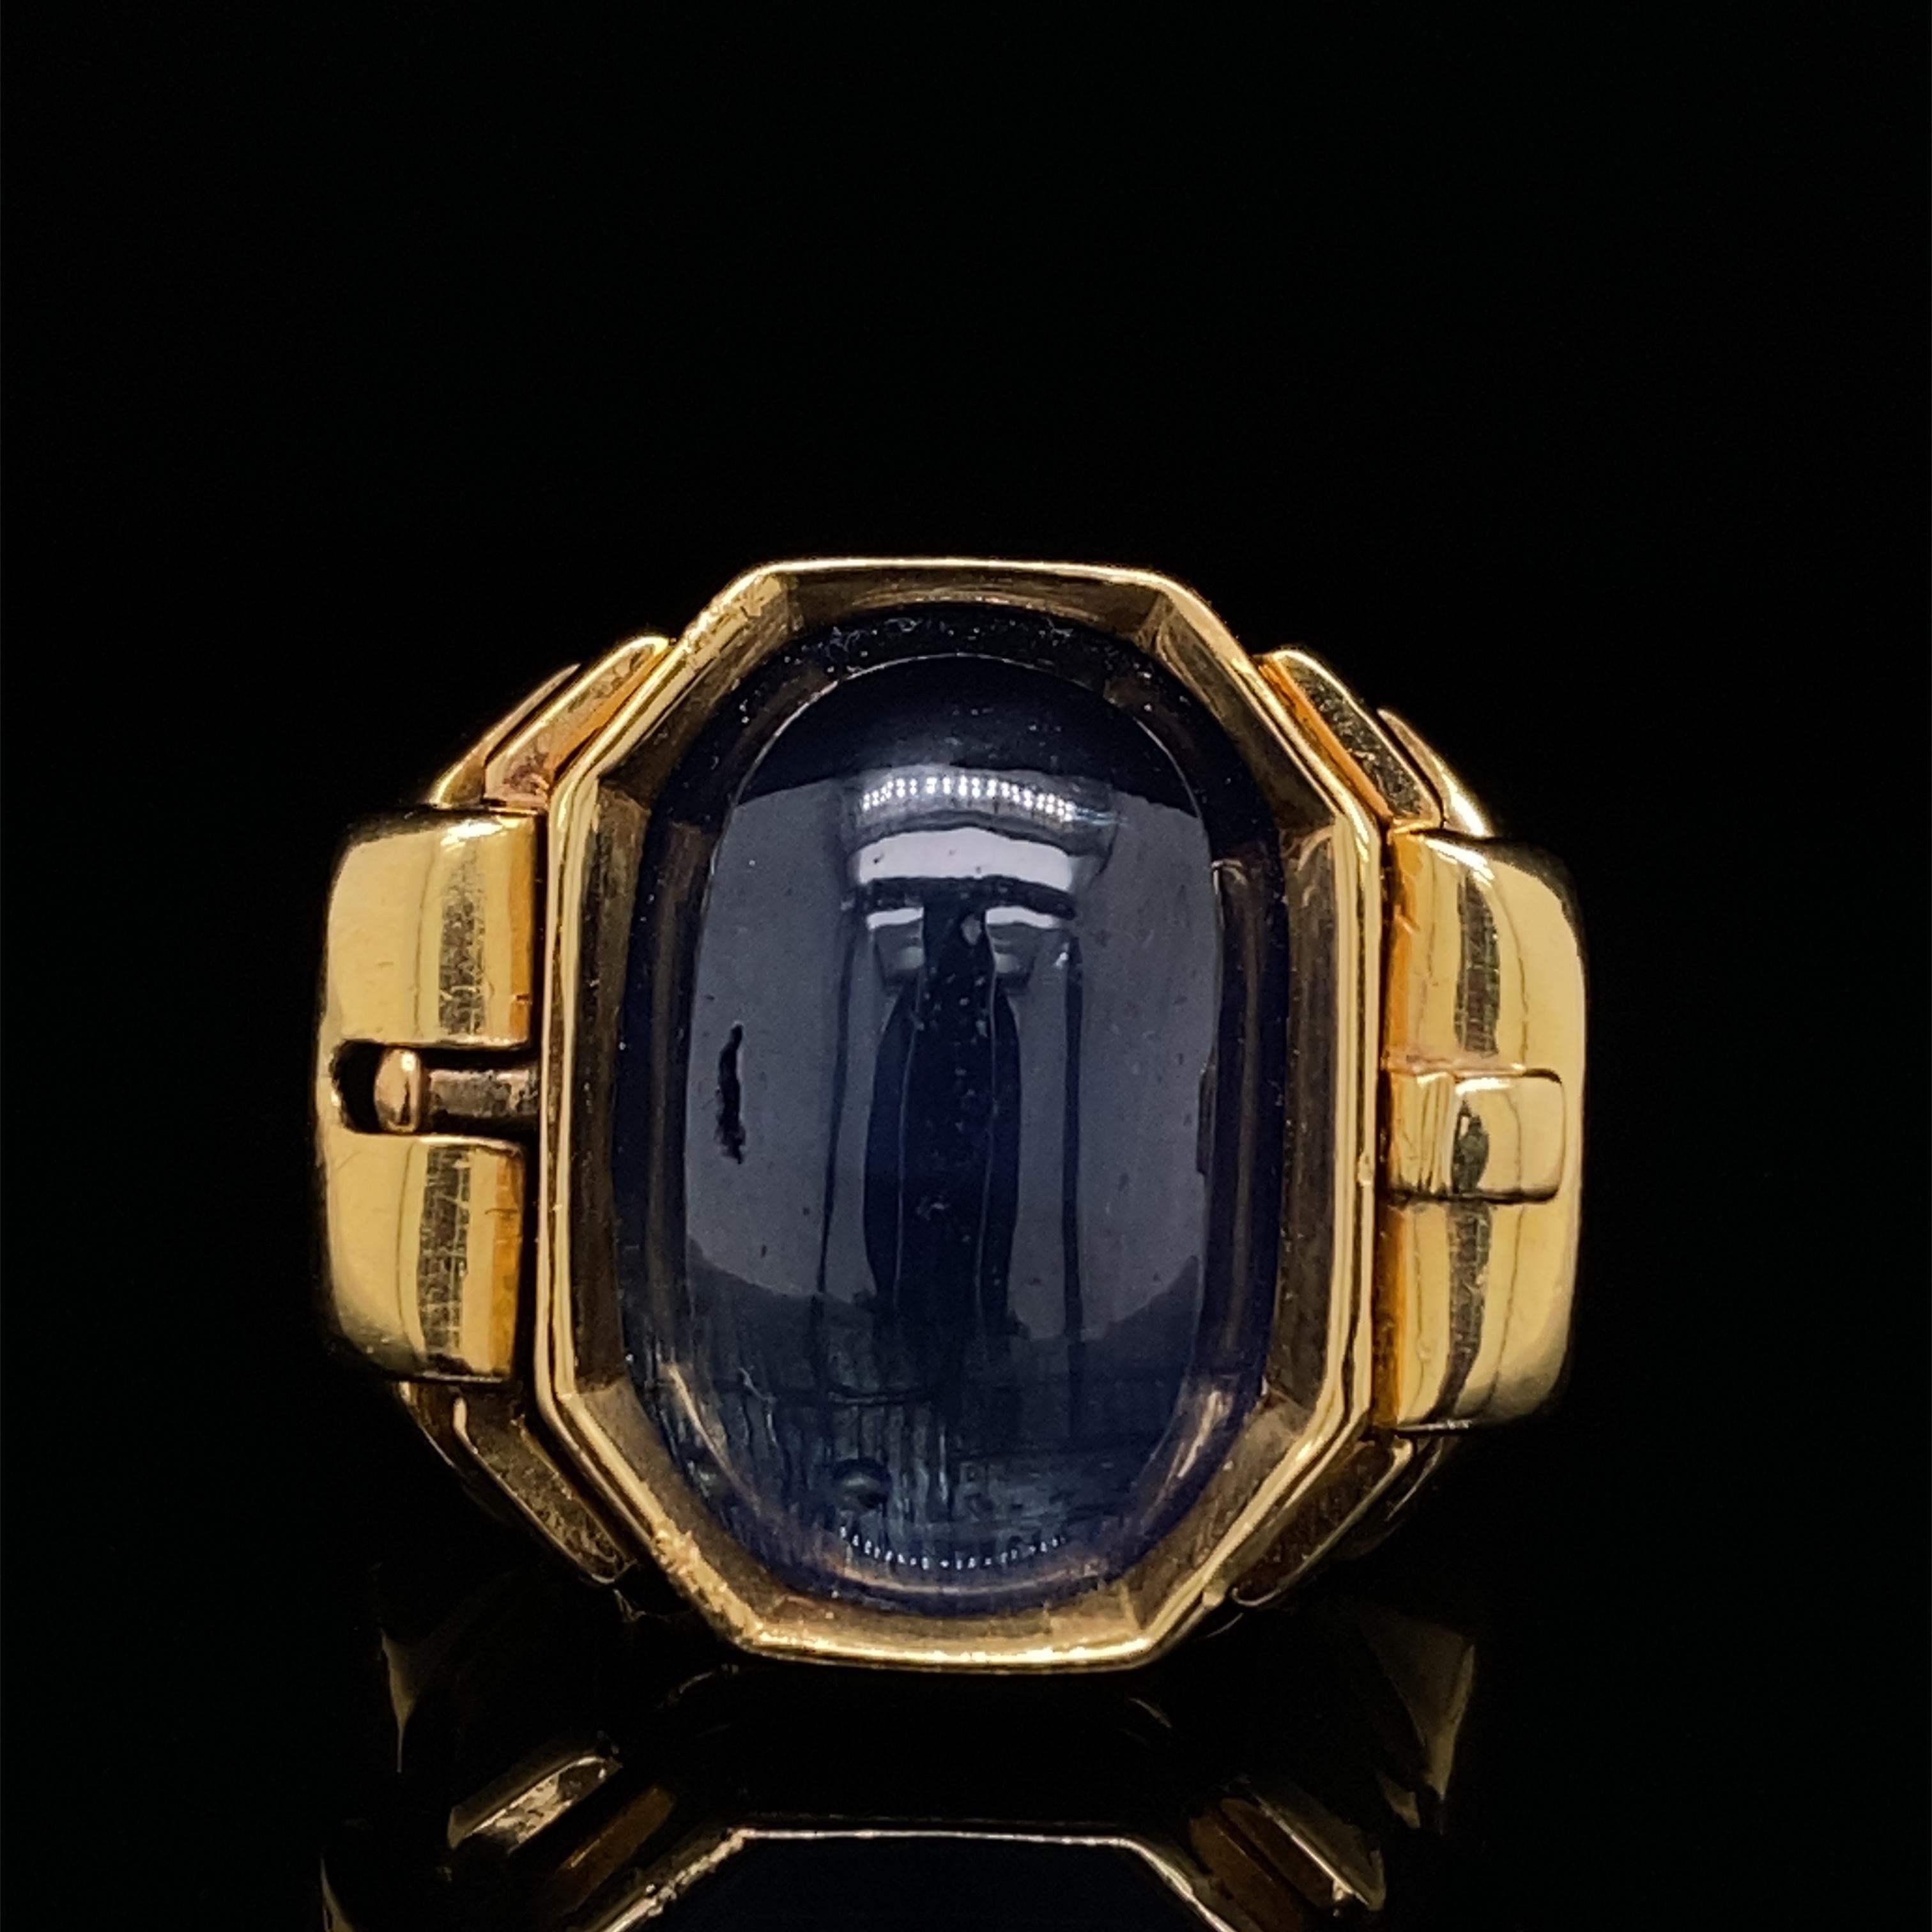 Retrospektiver Saphir-Signetring aus 18 Karat Gelbgold, um 1940.

Dieser ungewöhnliche und raffiniert gearbeitete Ring besteht aus einem tiefblauen Cabochon-Saphir, in den auf der einen Seite ein Siegel eingraviert ist, und einer glatt polierten